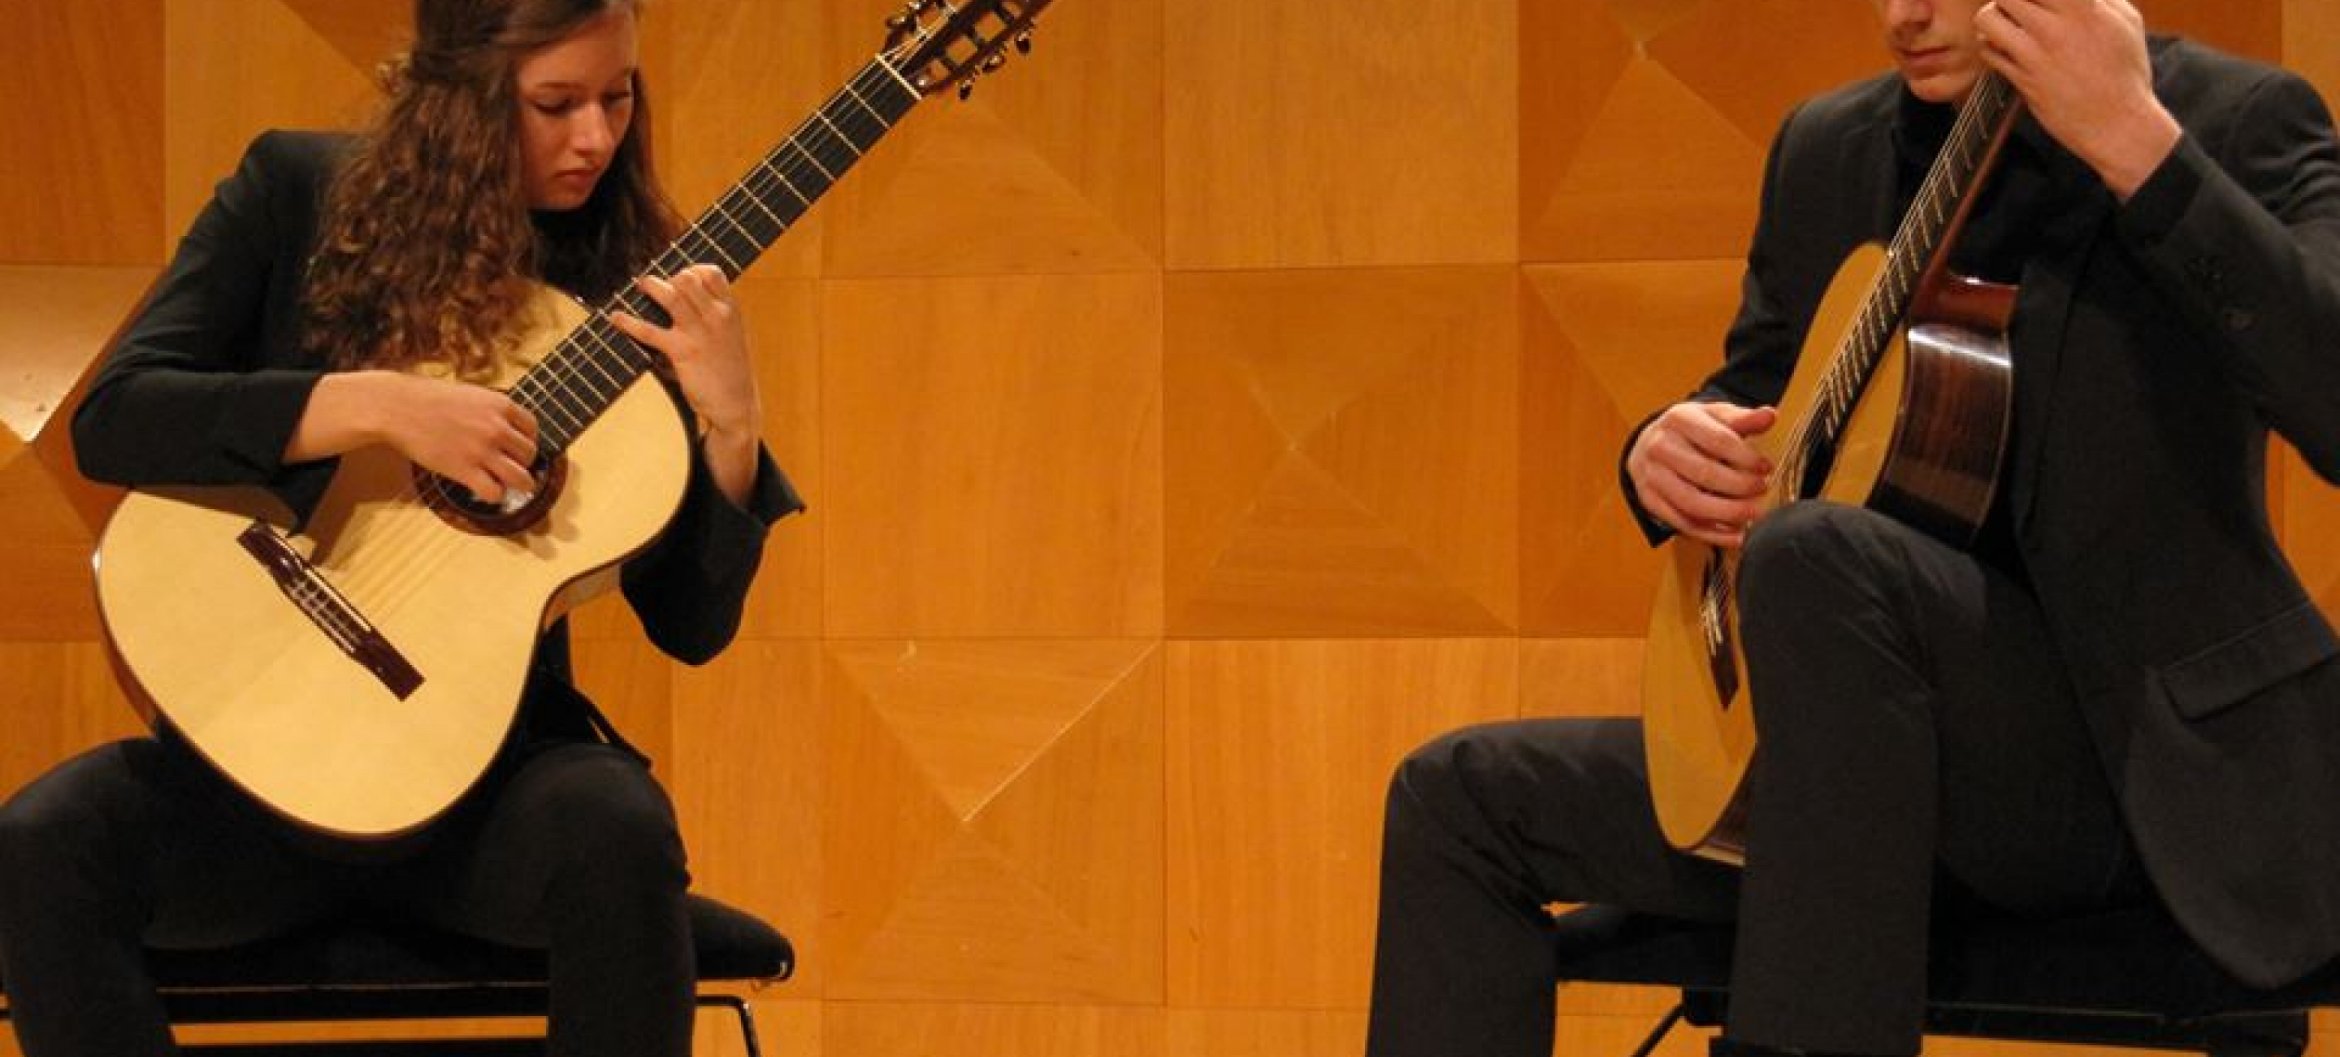 Marlot Hendriks en Koen Hutten, studenten gitaar Klassieke Muziek ArtEZ Conservatorium